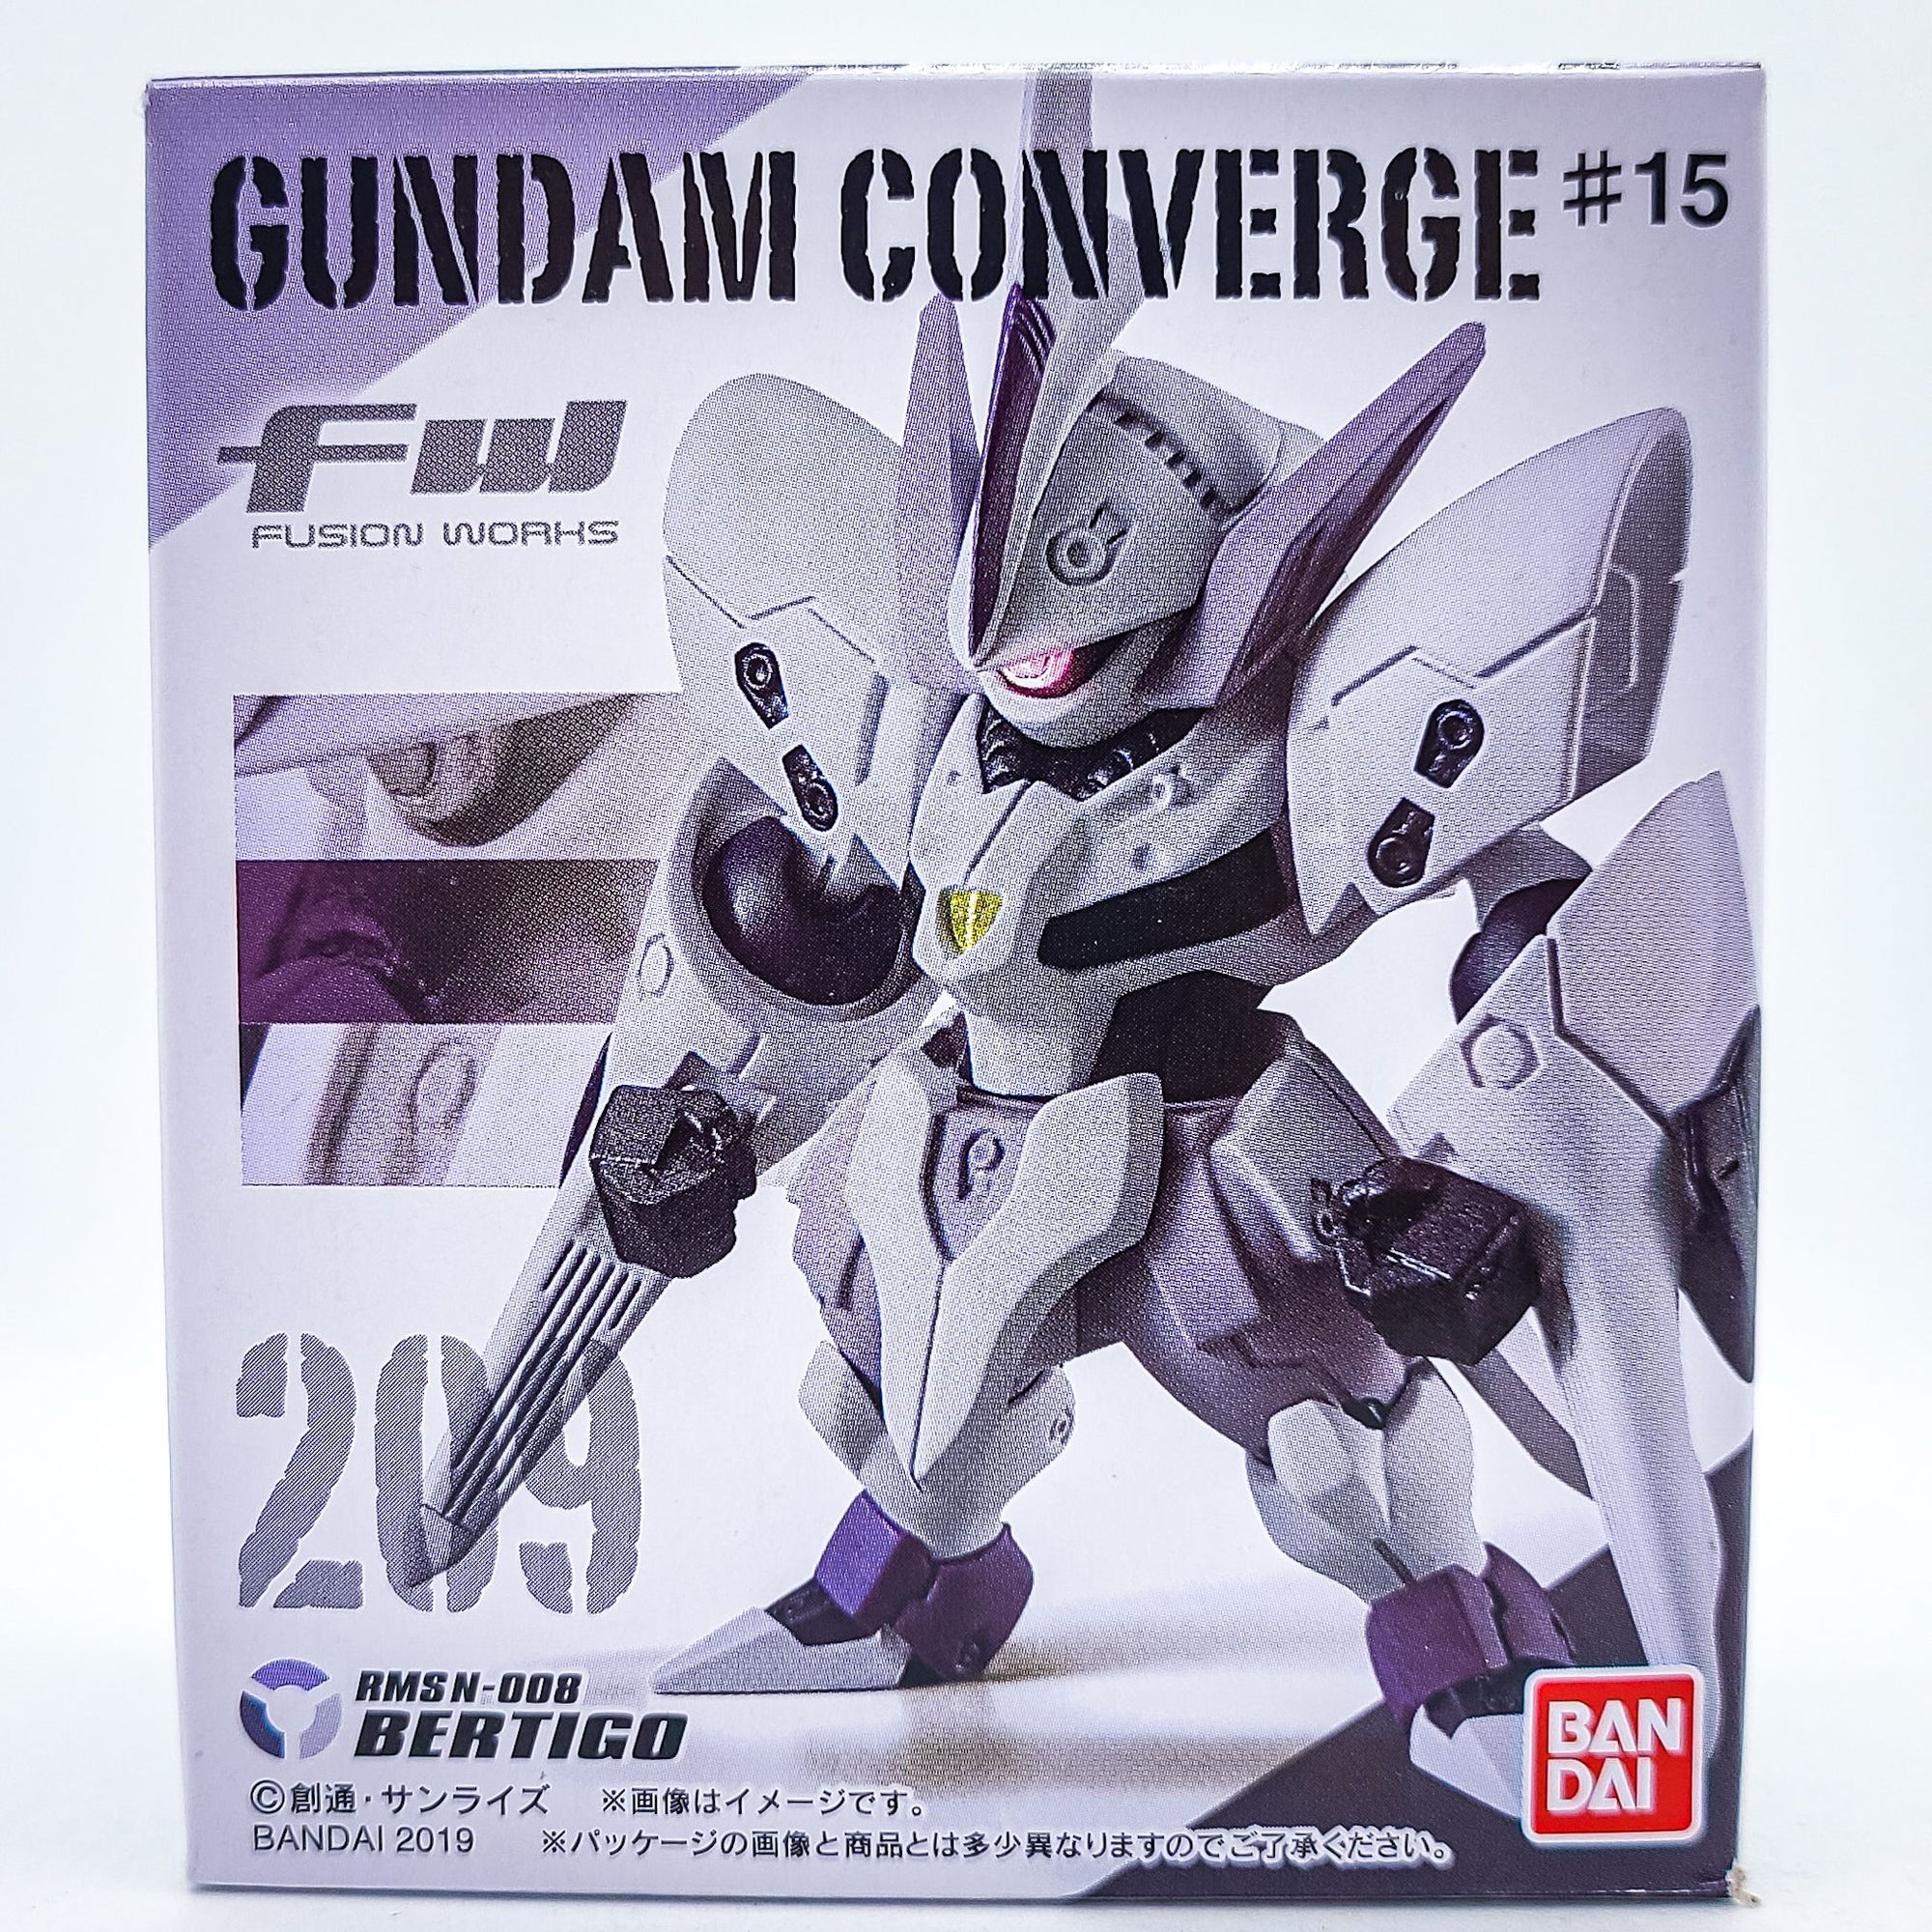 Gundam Converge #209 Bertigo by Bandai - 1